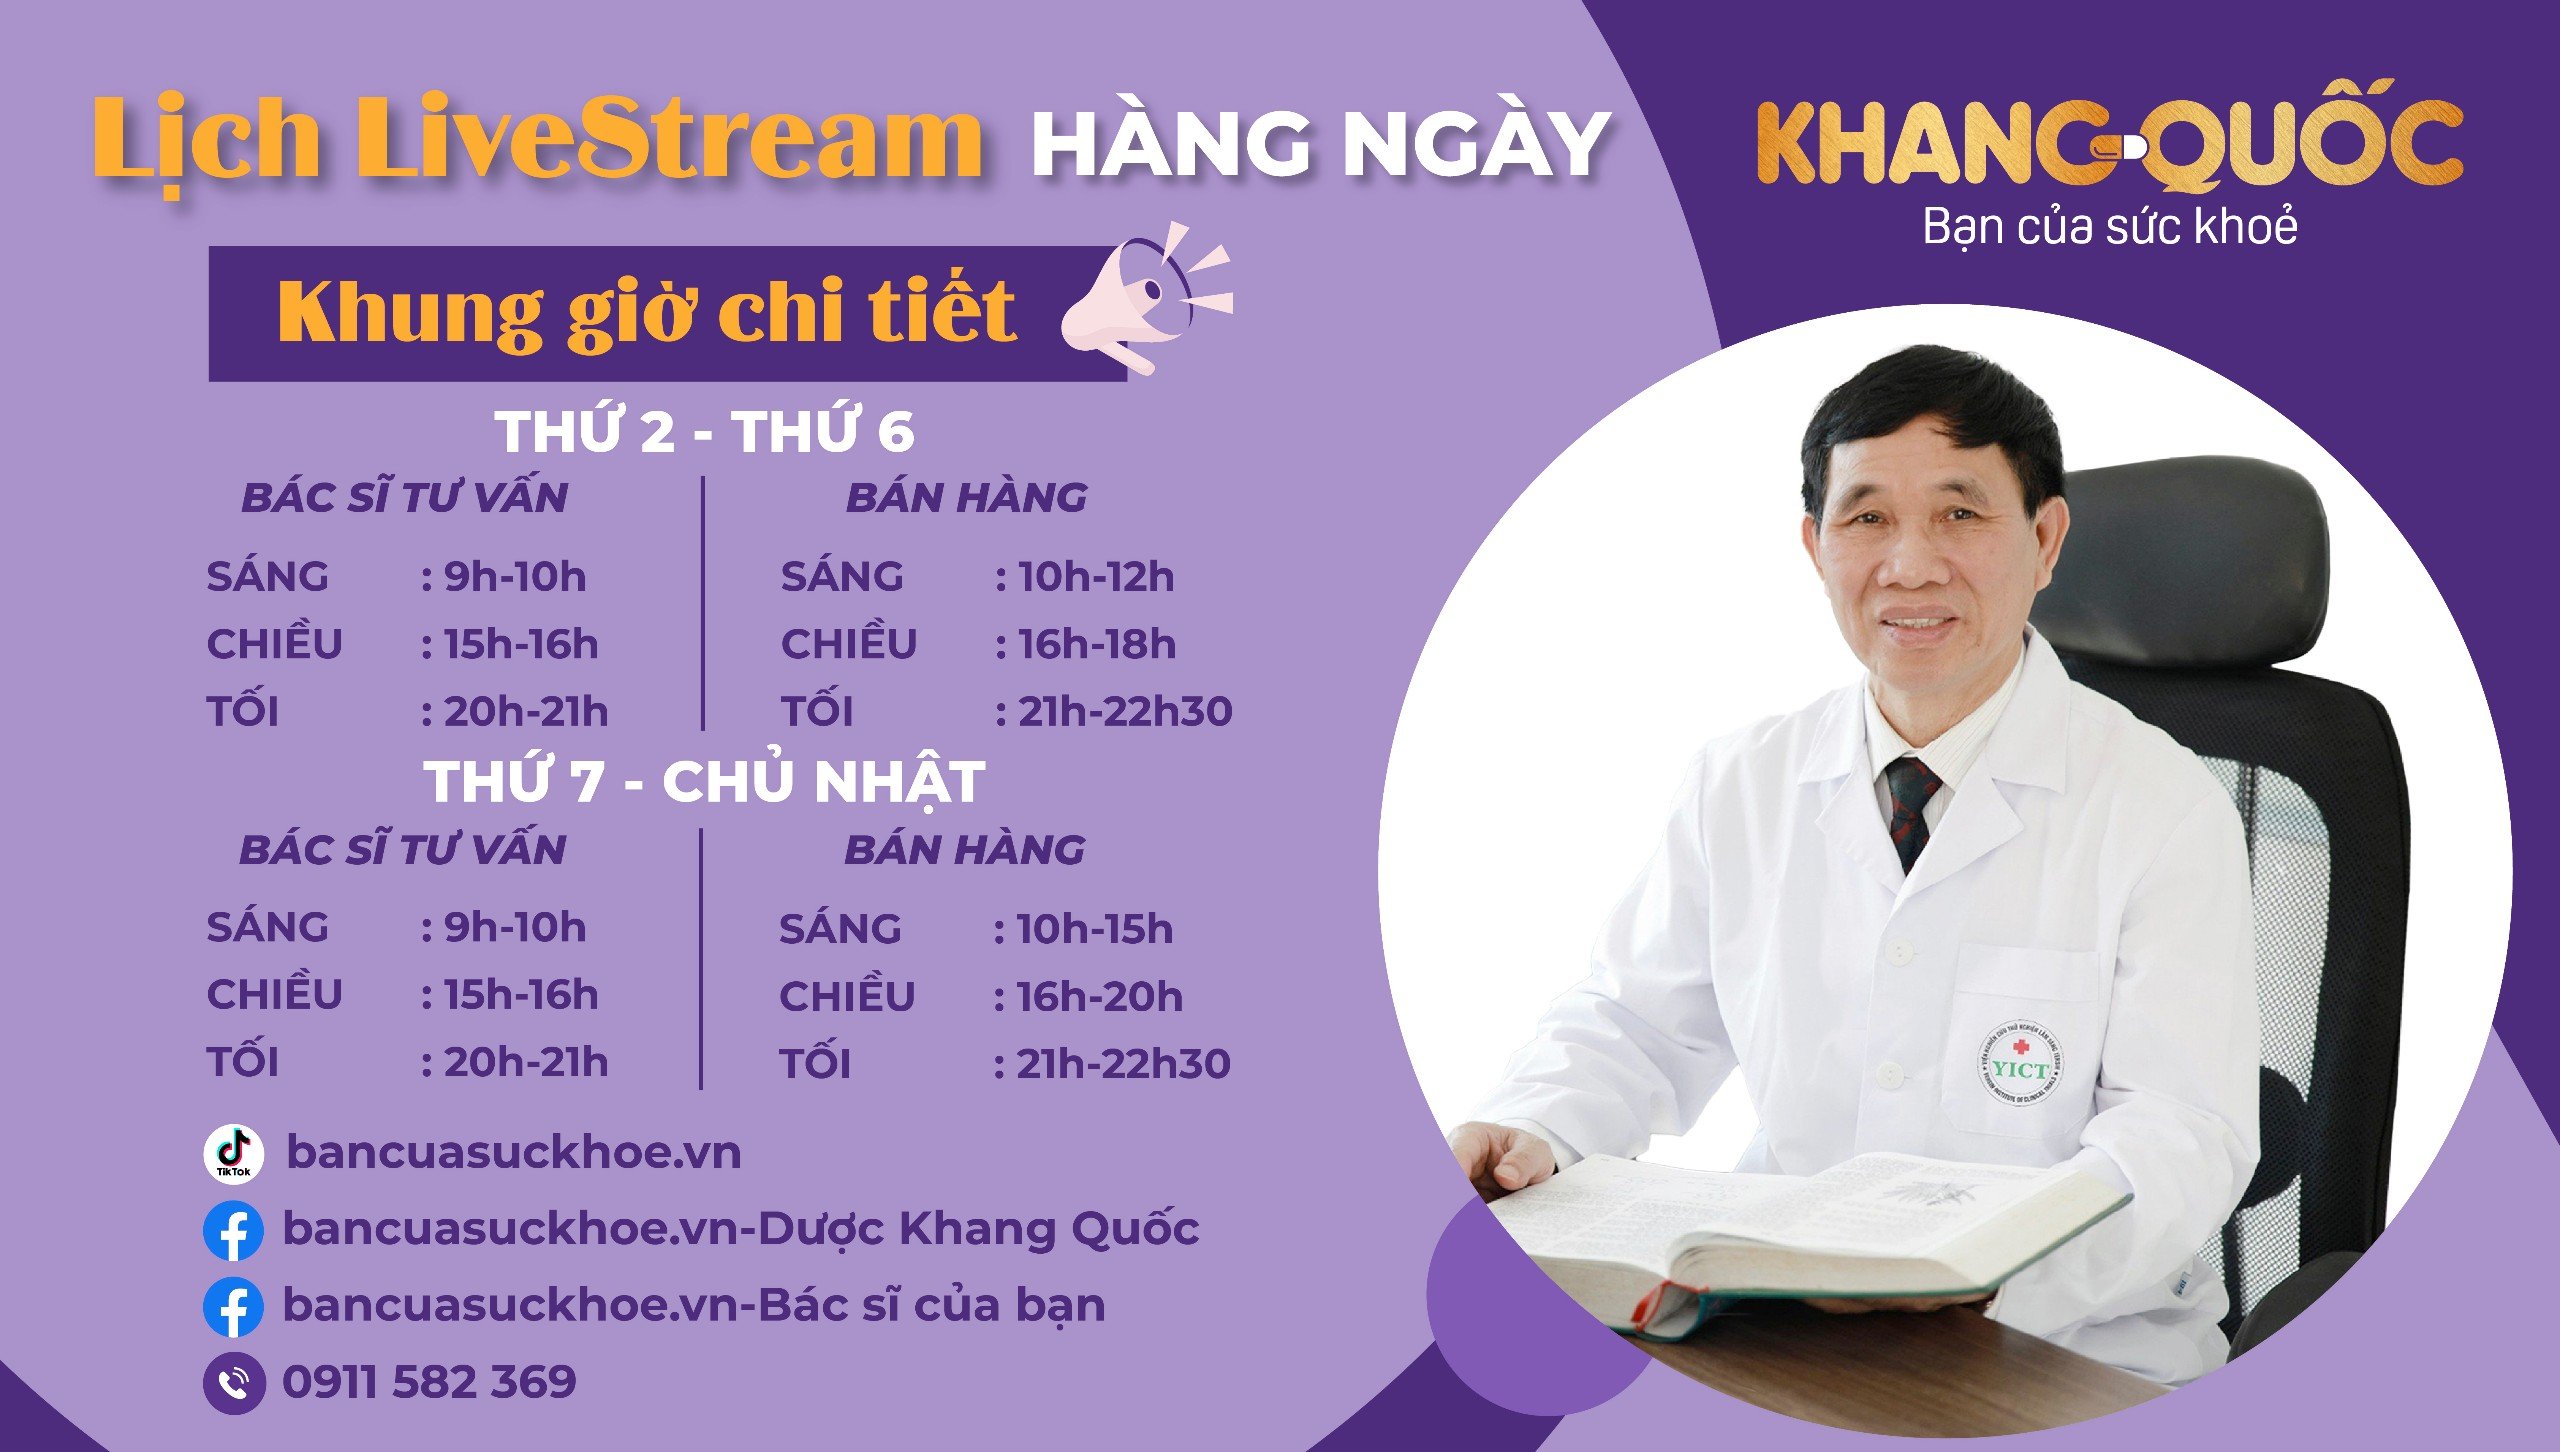 Chương trình livestream kèm nhiều ưu đãi hấp dẫn của Dược Khang Quốc - Bancuasuckhoe.vn